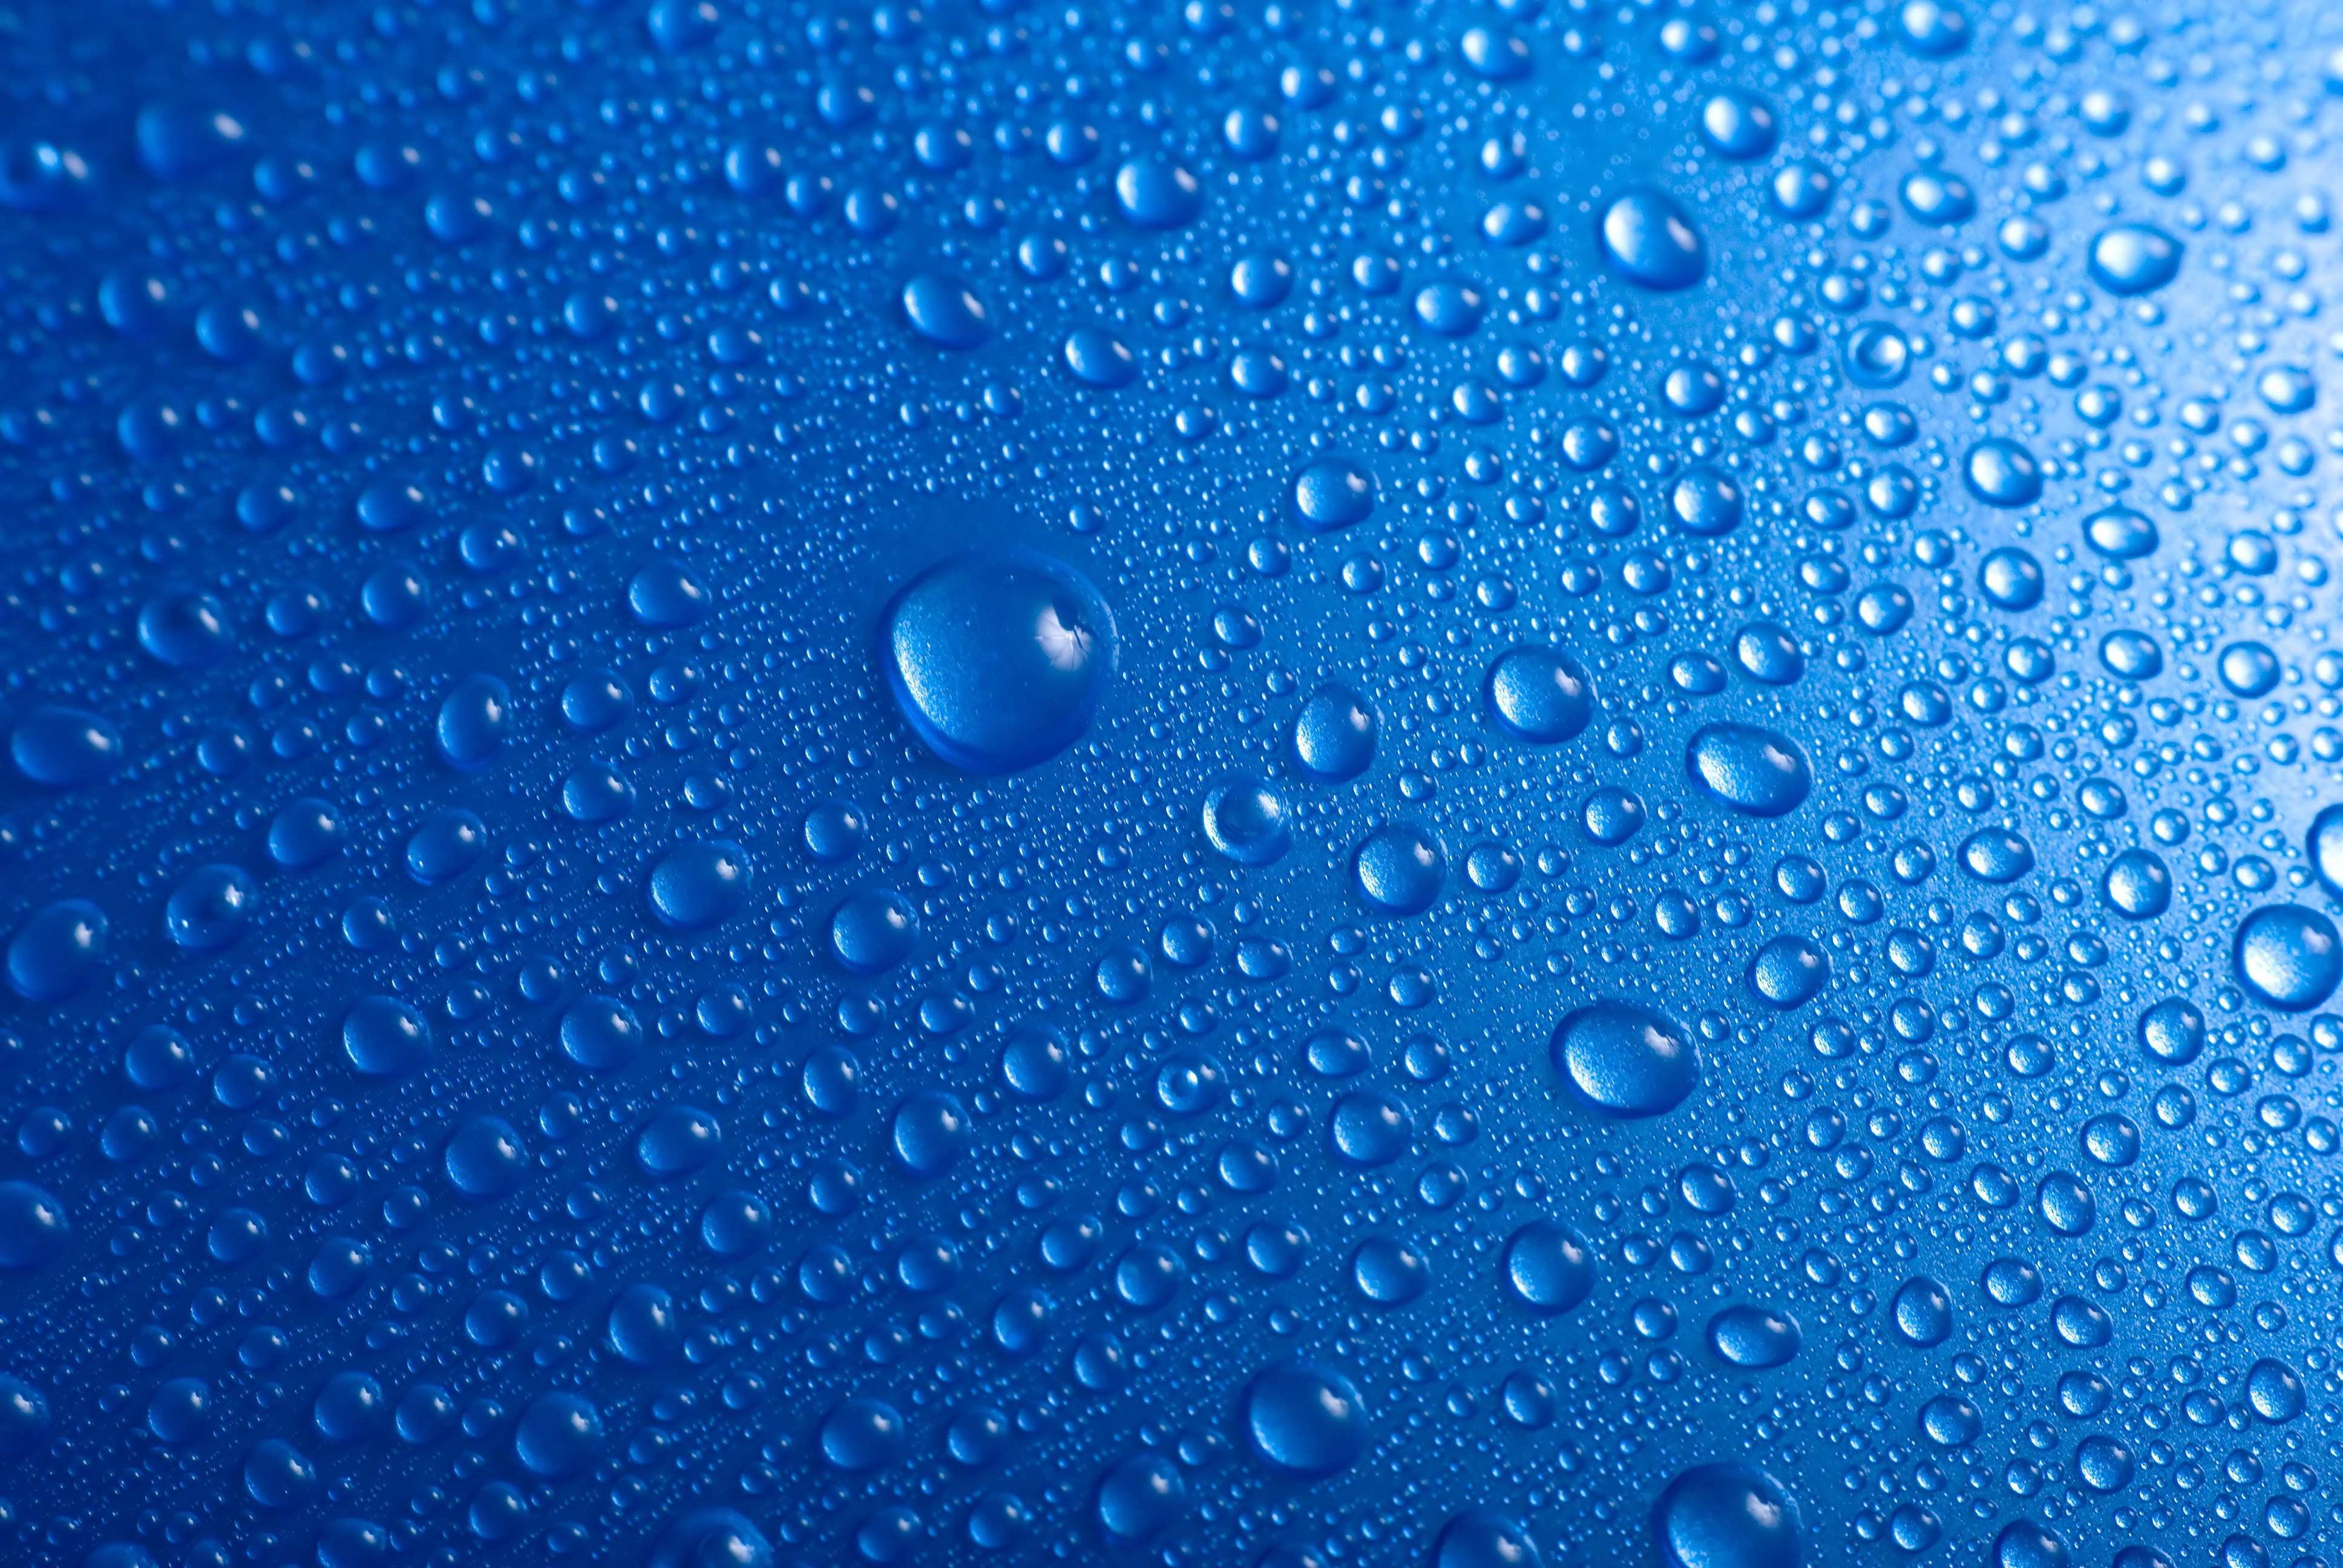 General 3872x2592 water drops liquid blue closeup